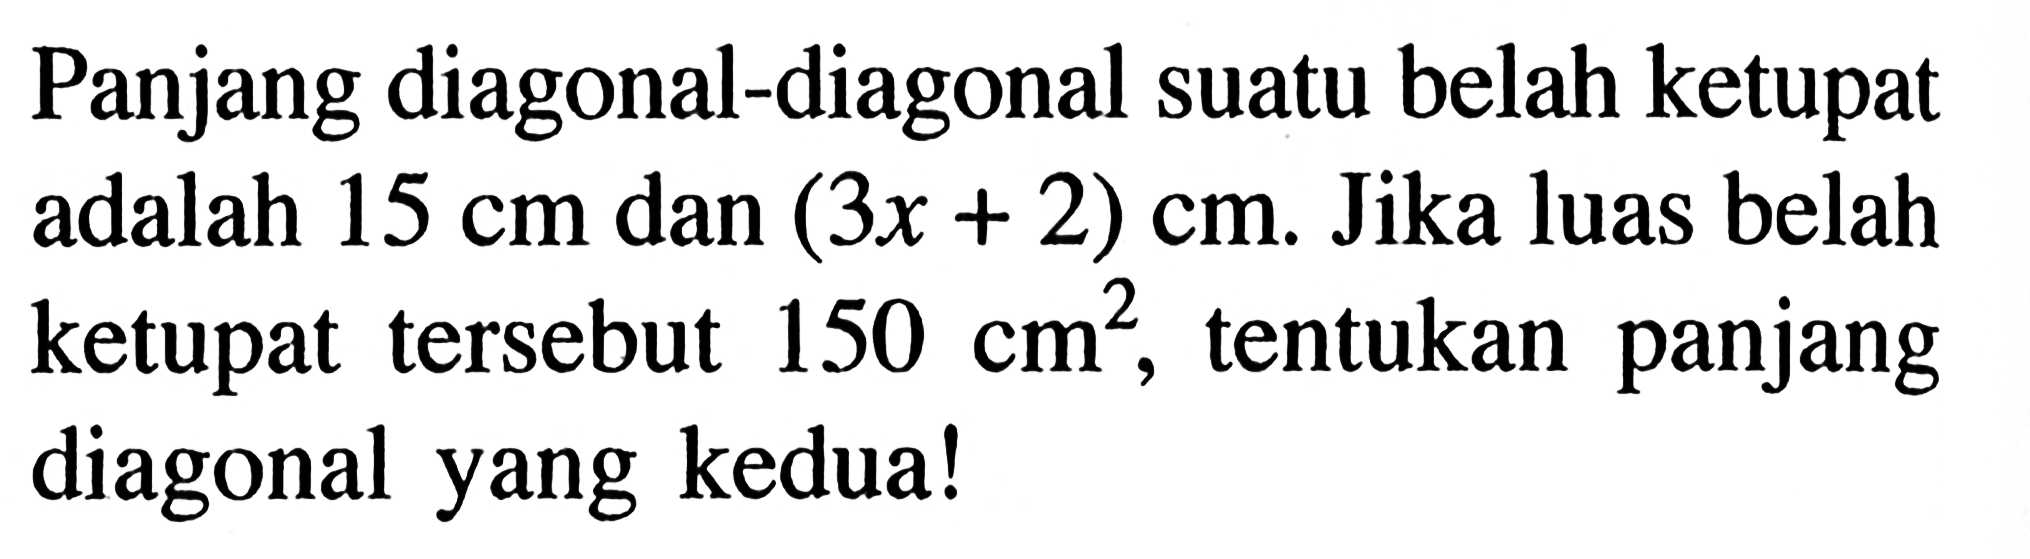 Panjang diagonal-diagonal suatu belah ketupat adalah  15 cm  dan  (3x+2) cm . Jika luas belah ketupat tersebut  150 cm^2 , tentukan panjang diagonal yang kedua!